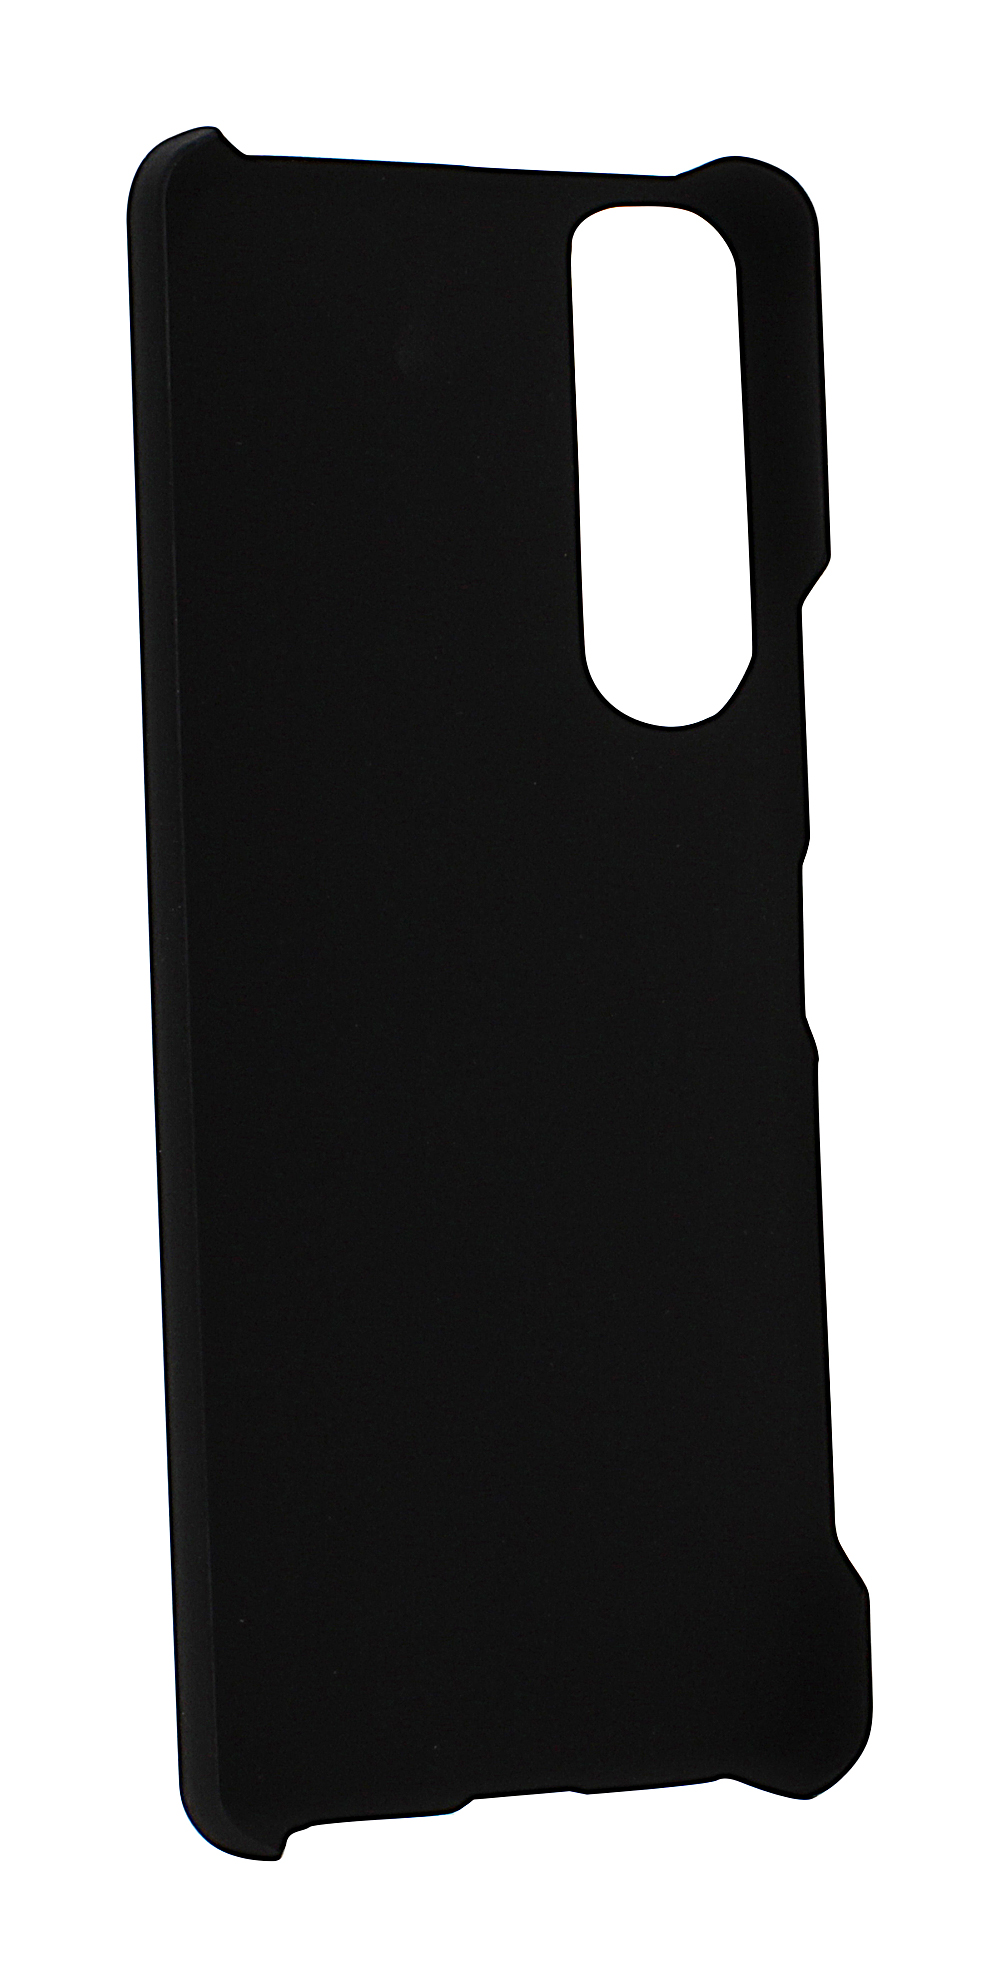 Magnet Cover Sony Xperia 5 III (XQ-BQ52)